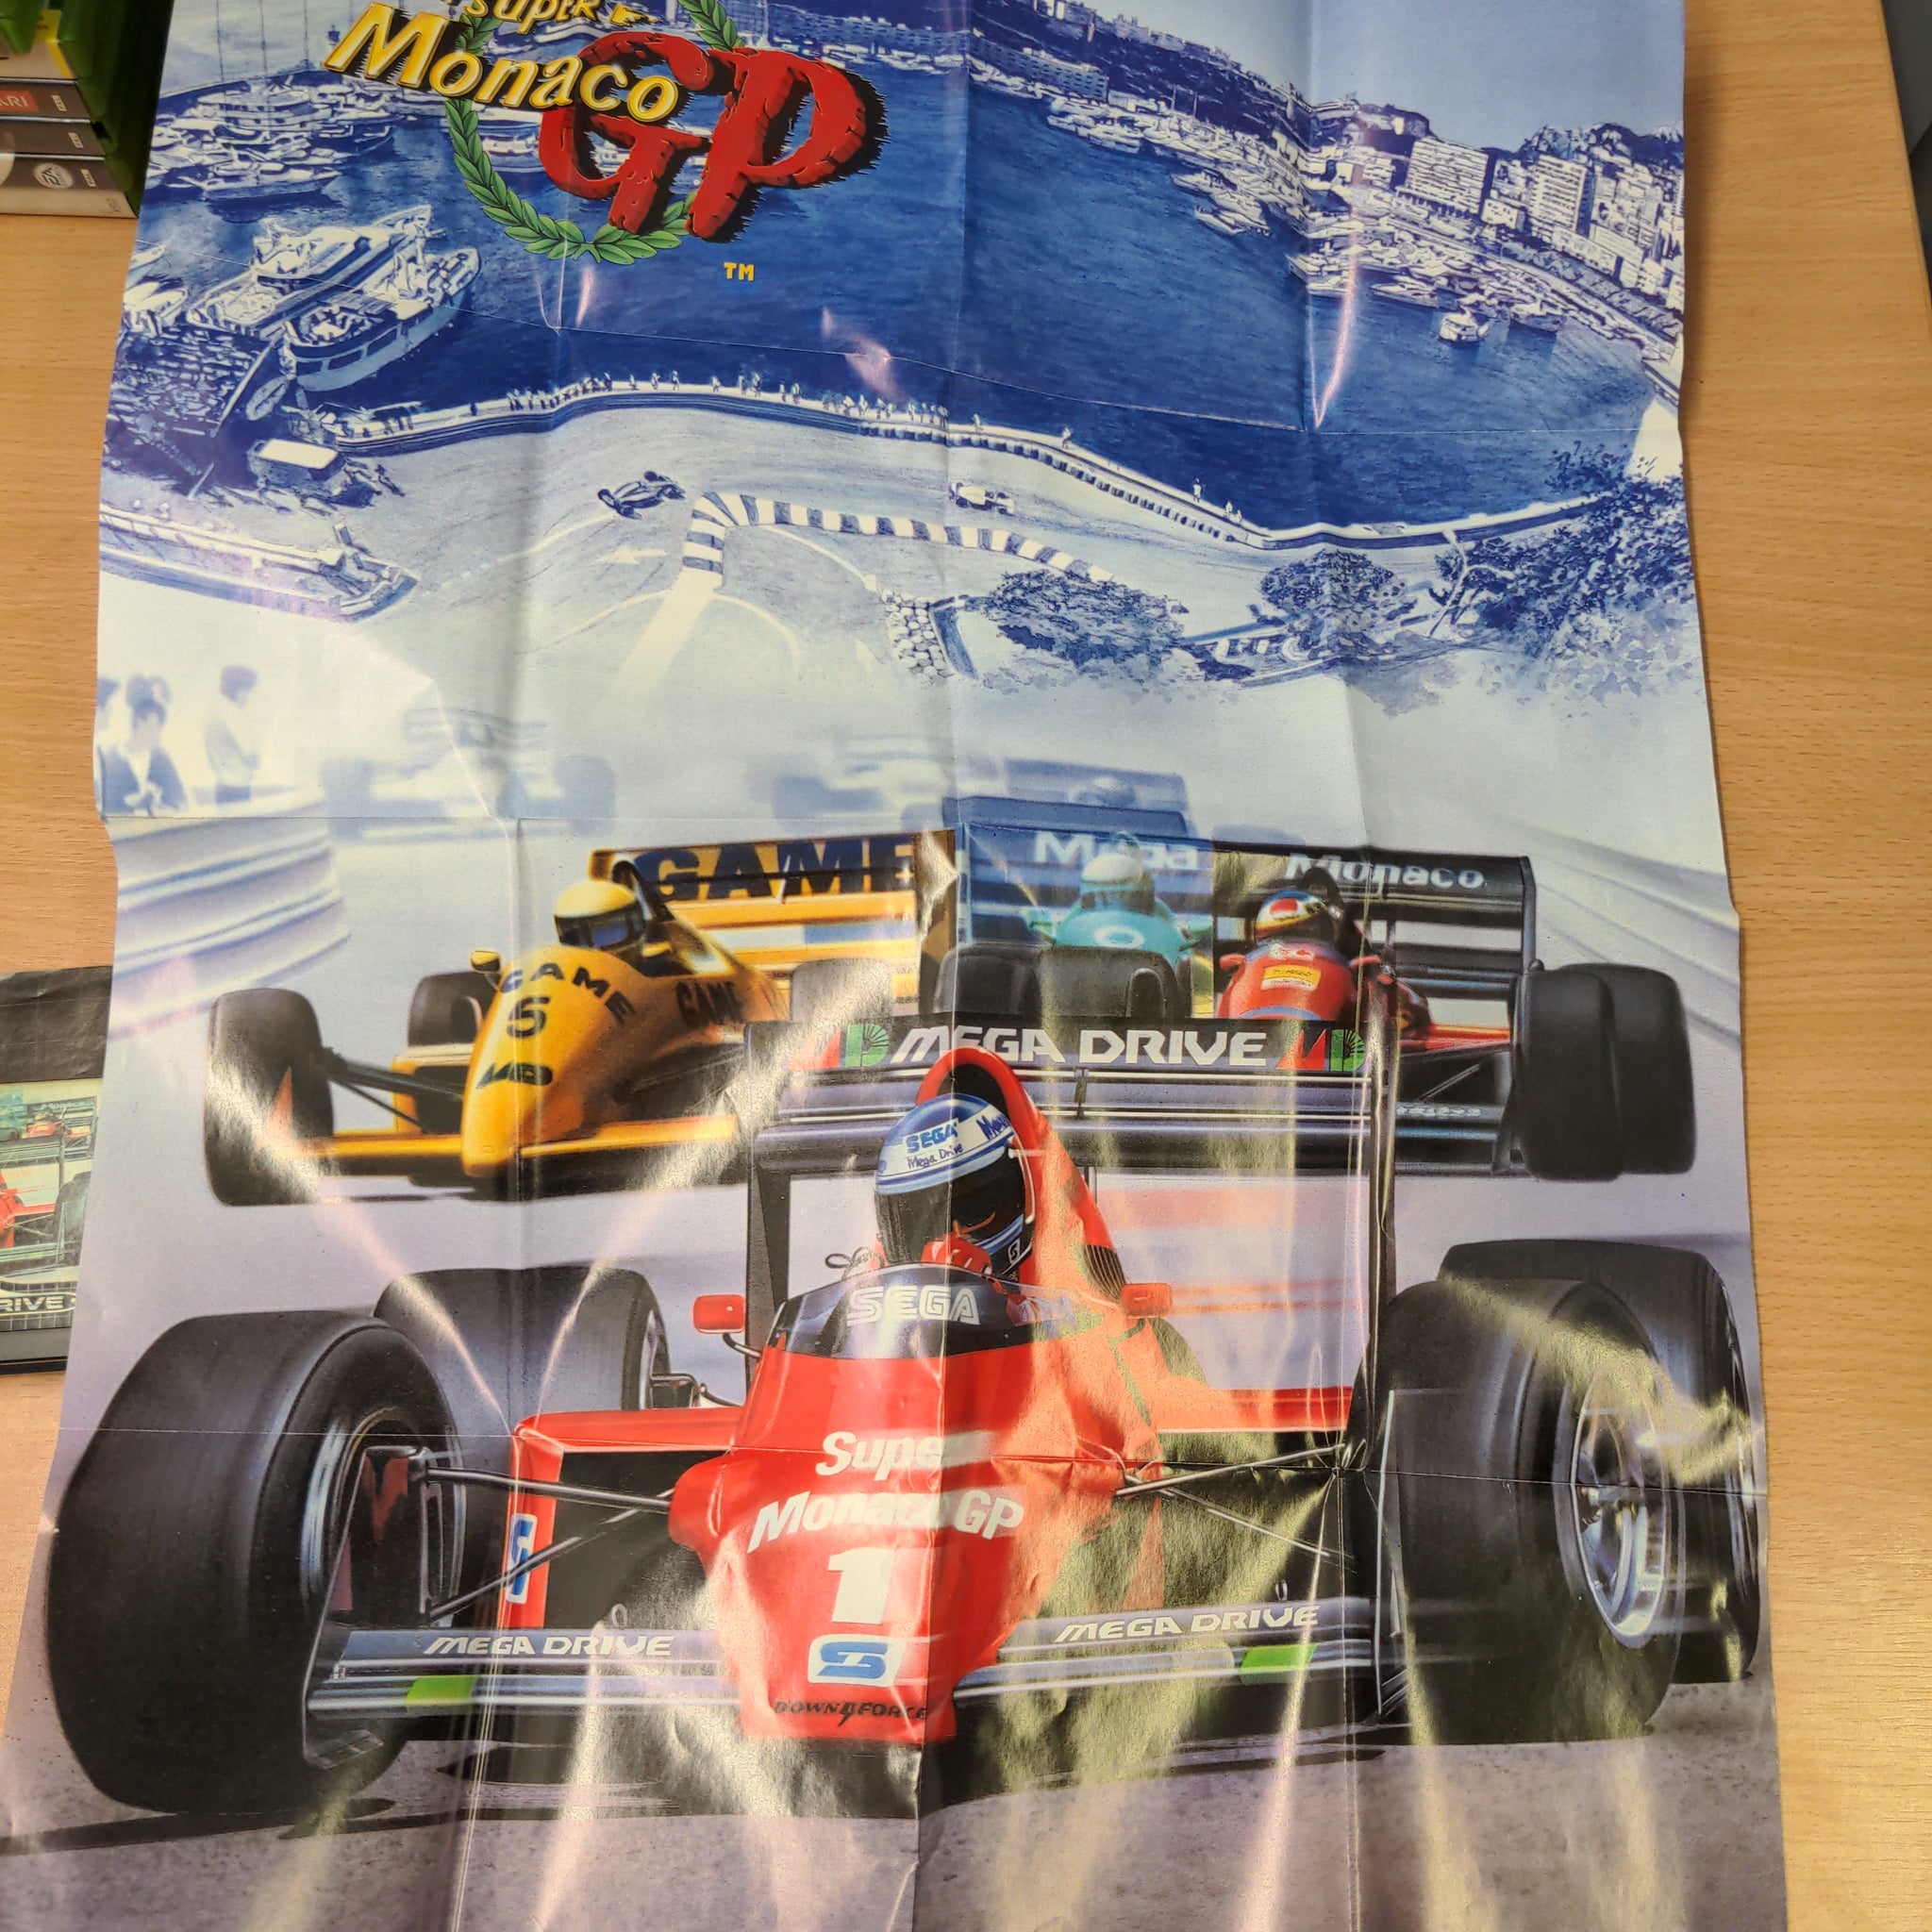 Super Monaco GP Sega Mega Drive game complete with Poster